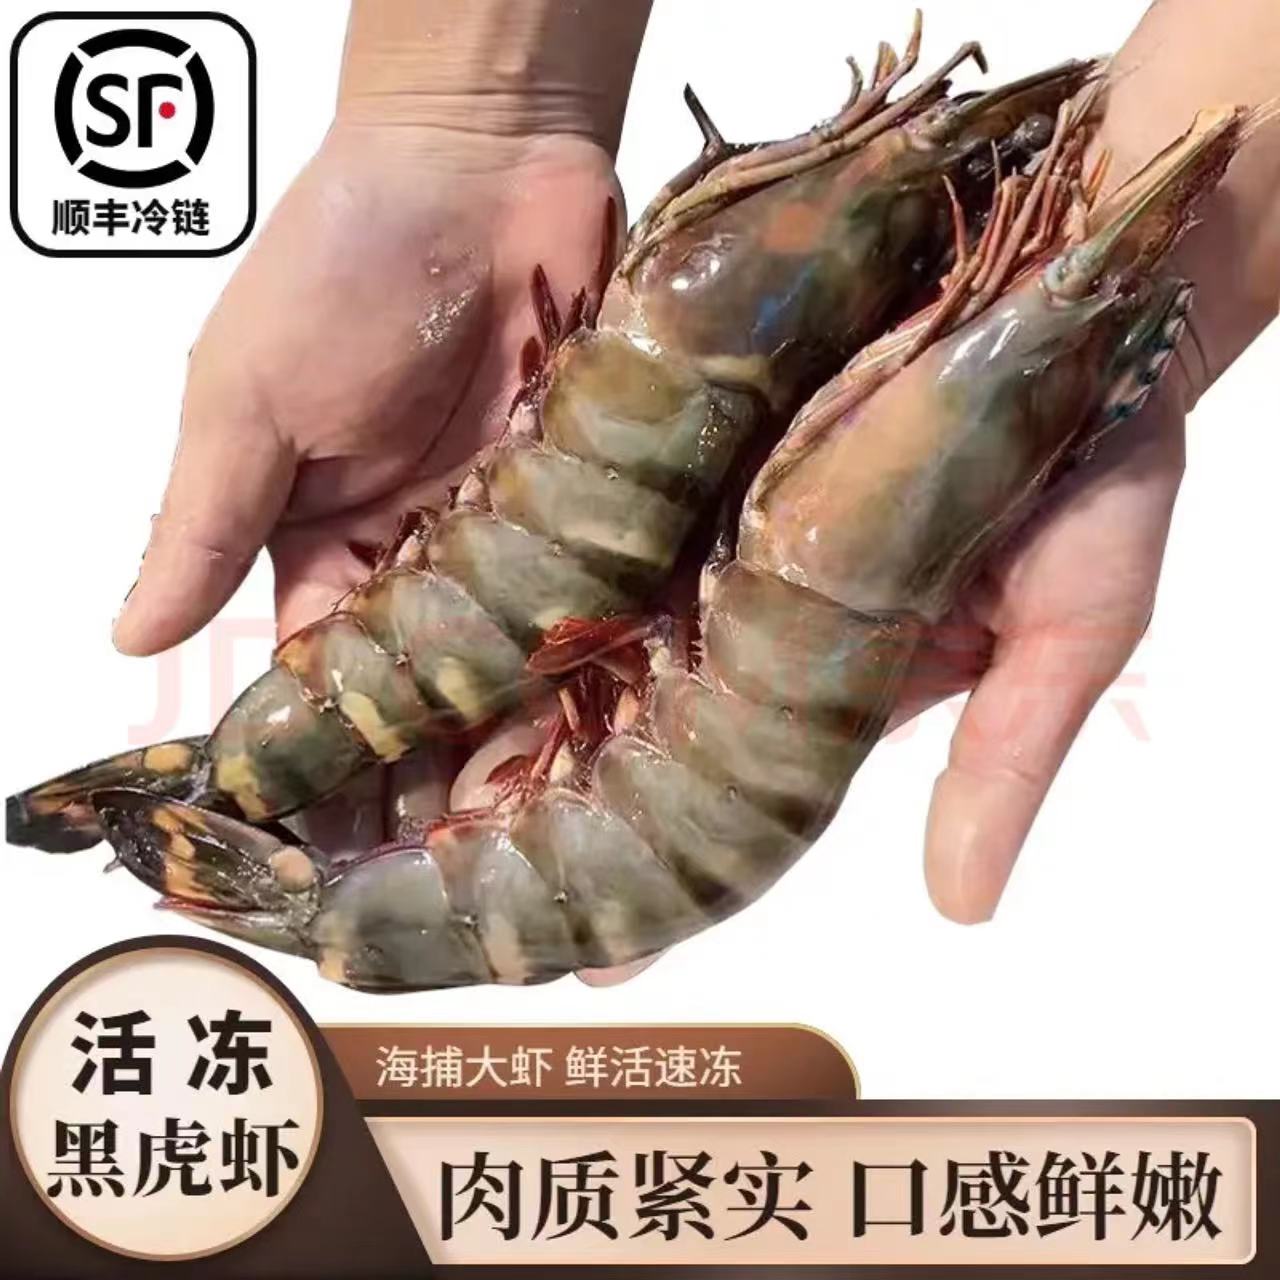 太湖海 虾 超大黑虎虾 东山岛大虾 活冻巨型老虎虾 特大号海虾生鲜 虾类